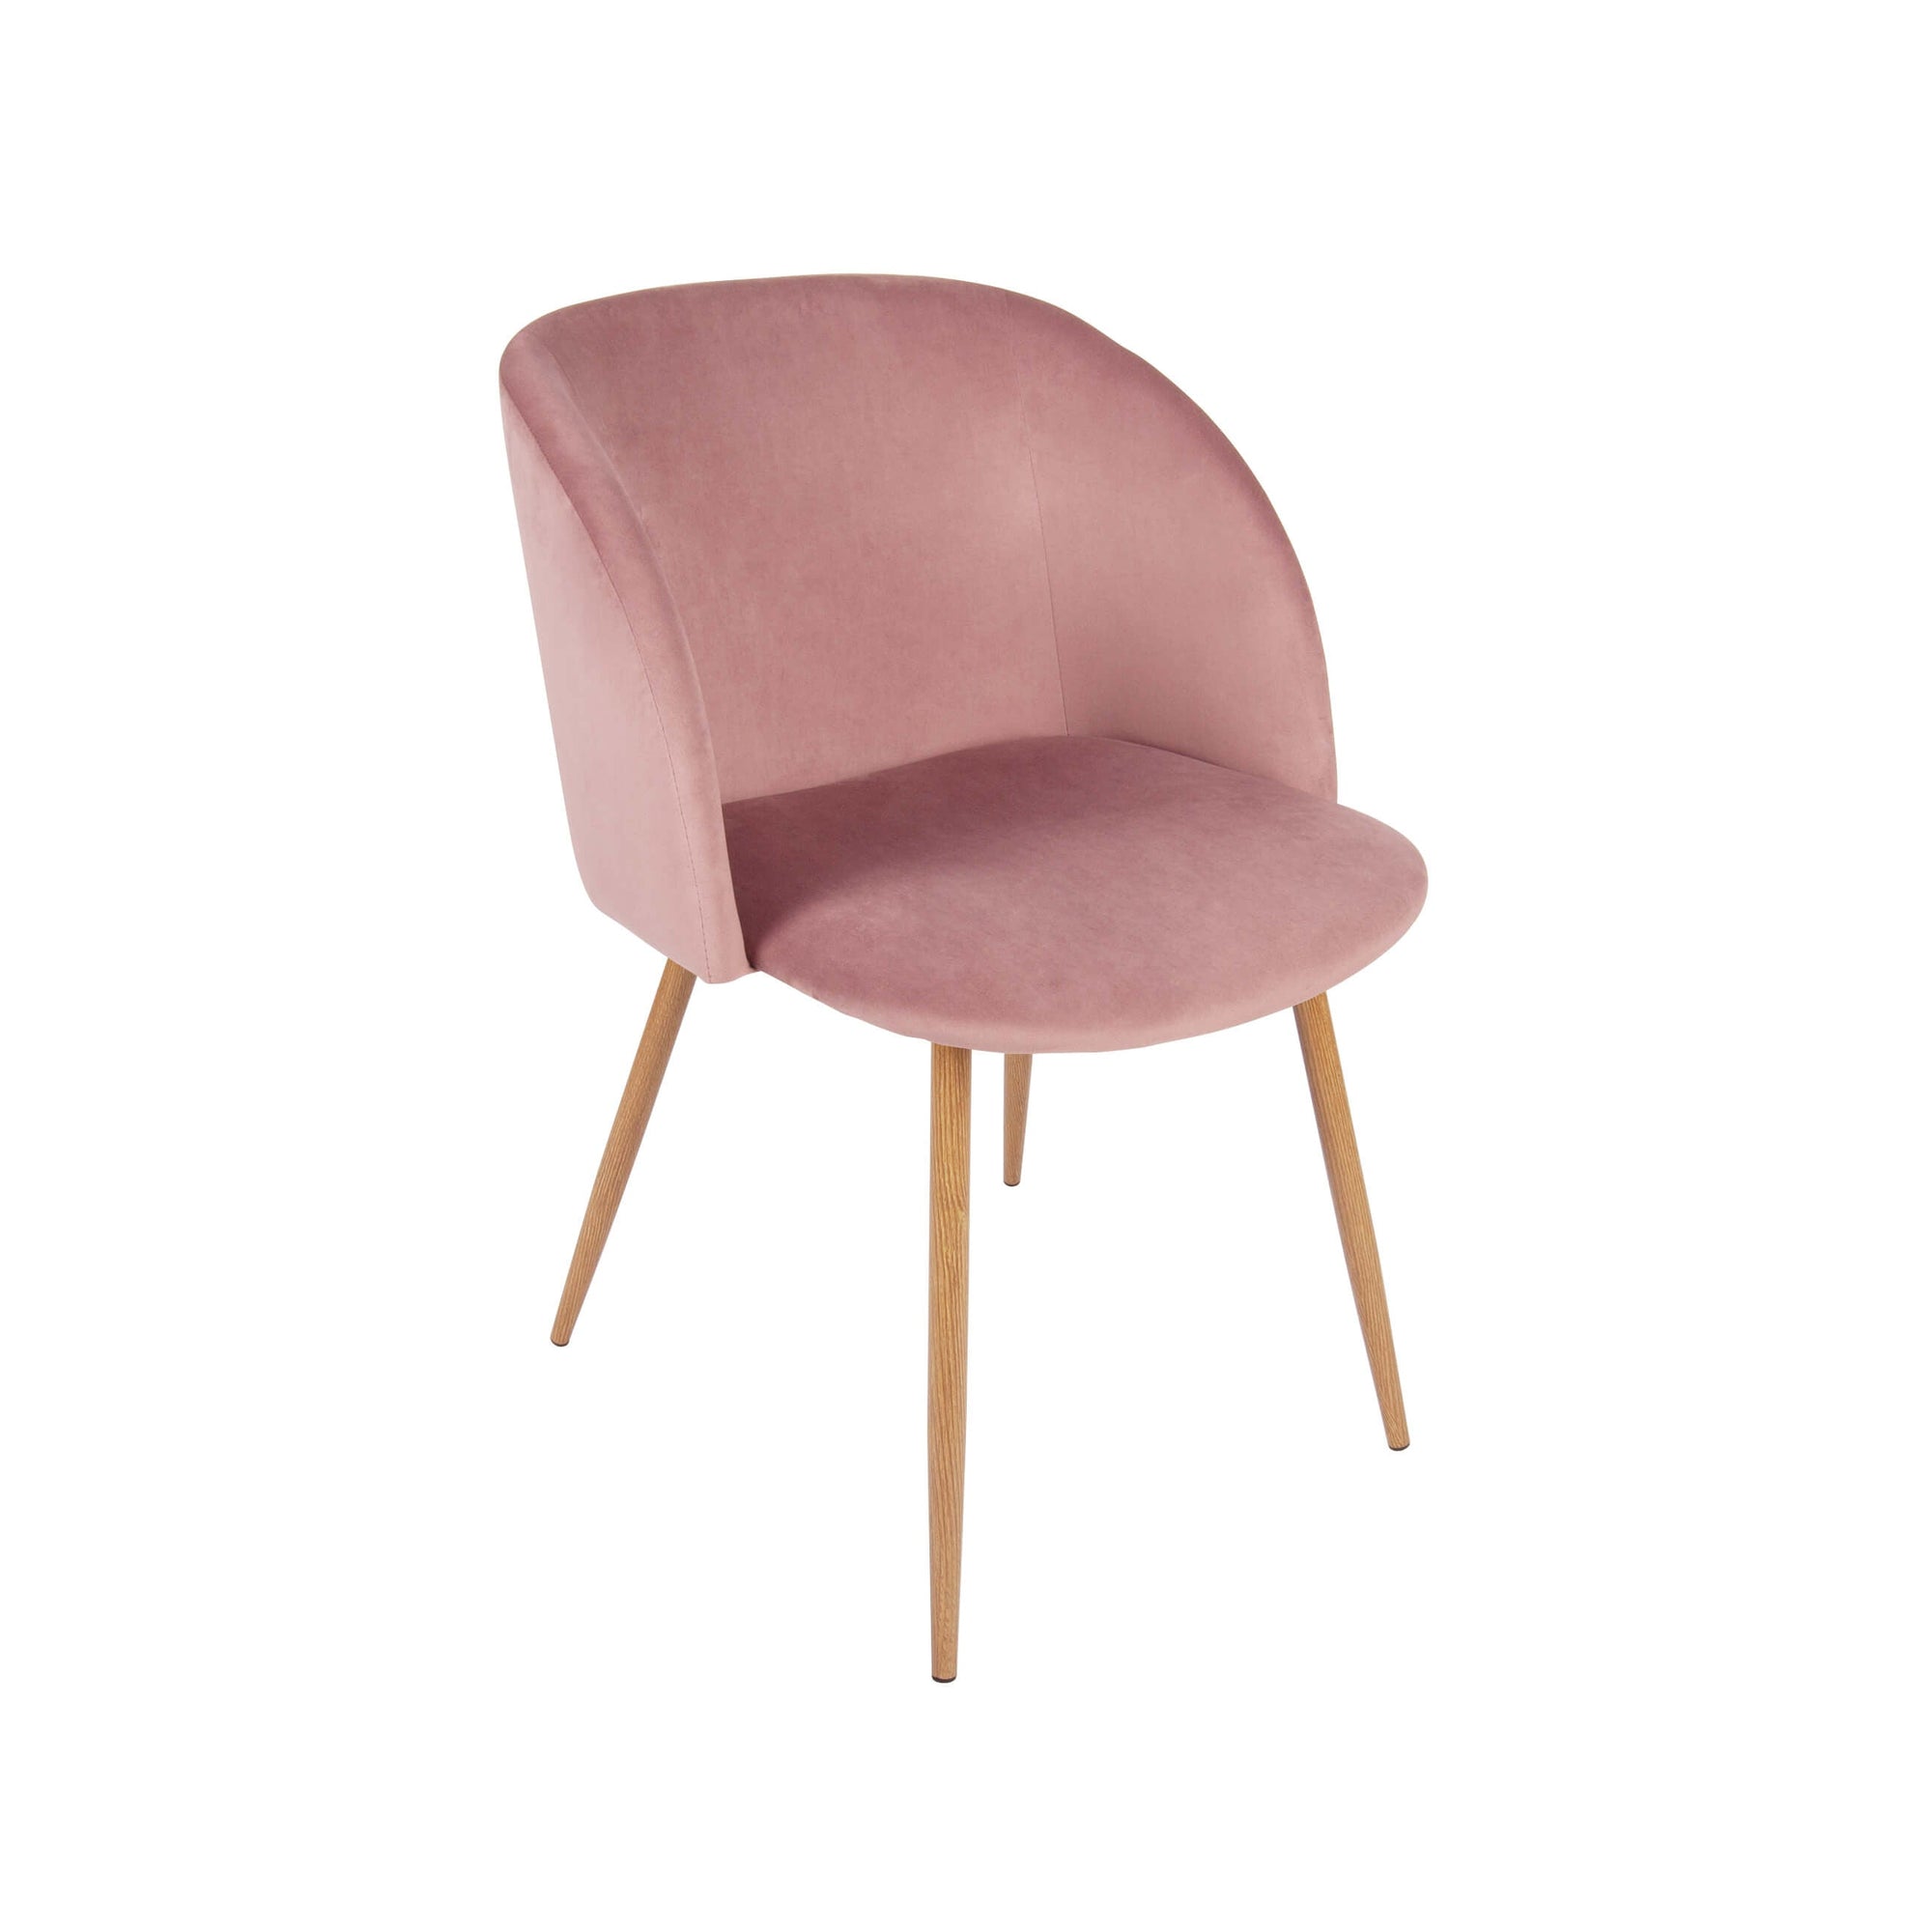 Oferta Scaun dining tapitat FRANCESCA roz, comod, design modern.